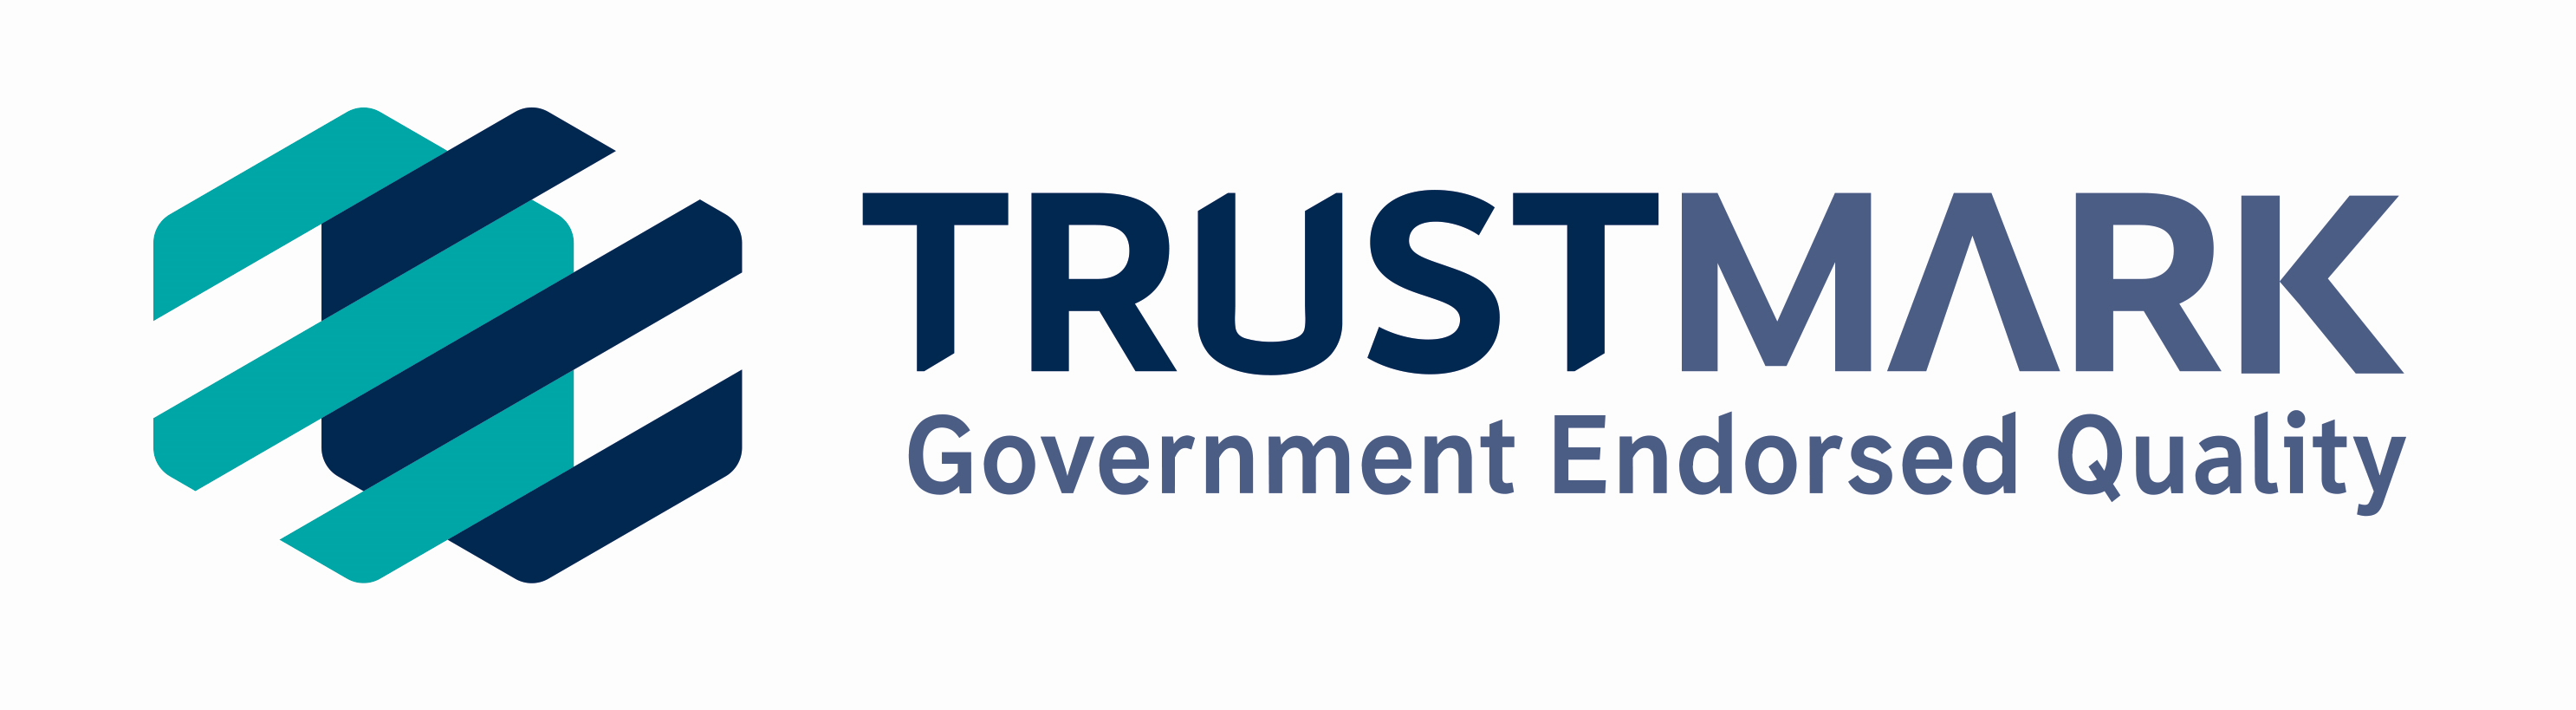 https://homerooflinesolutions.co.uk/wp-content/uploads/2021/03/TrustMark-logo.png